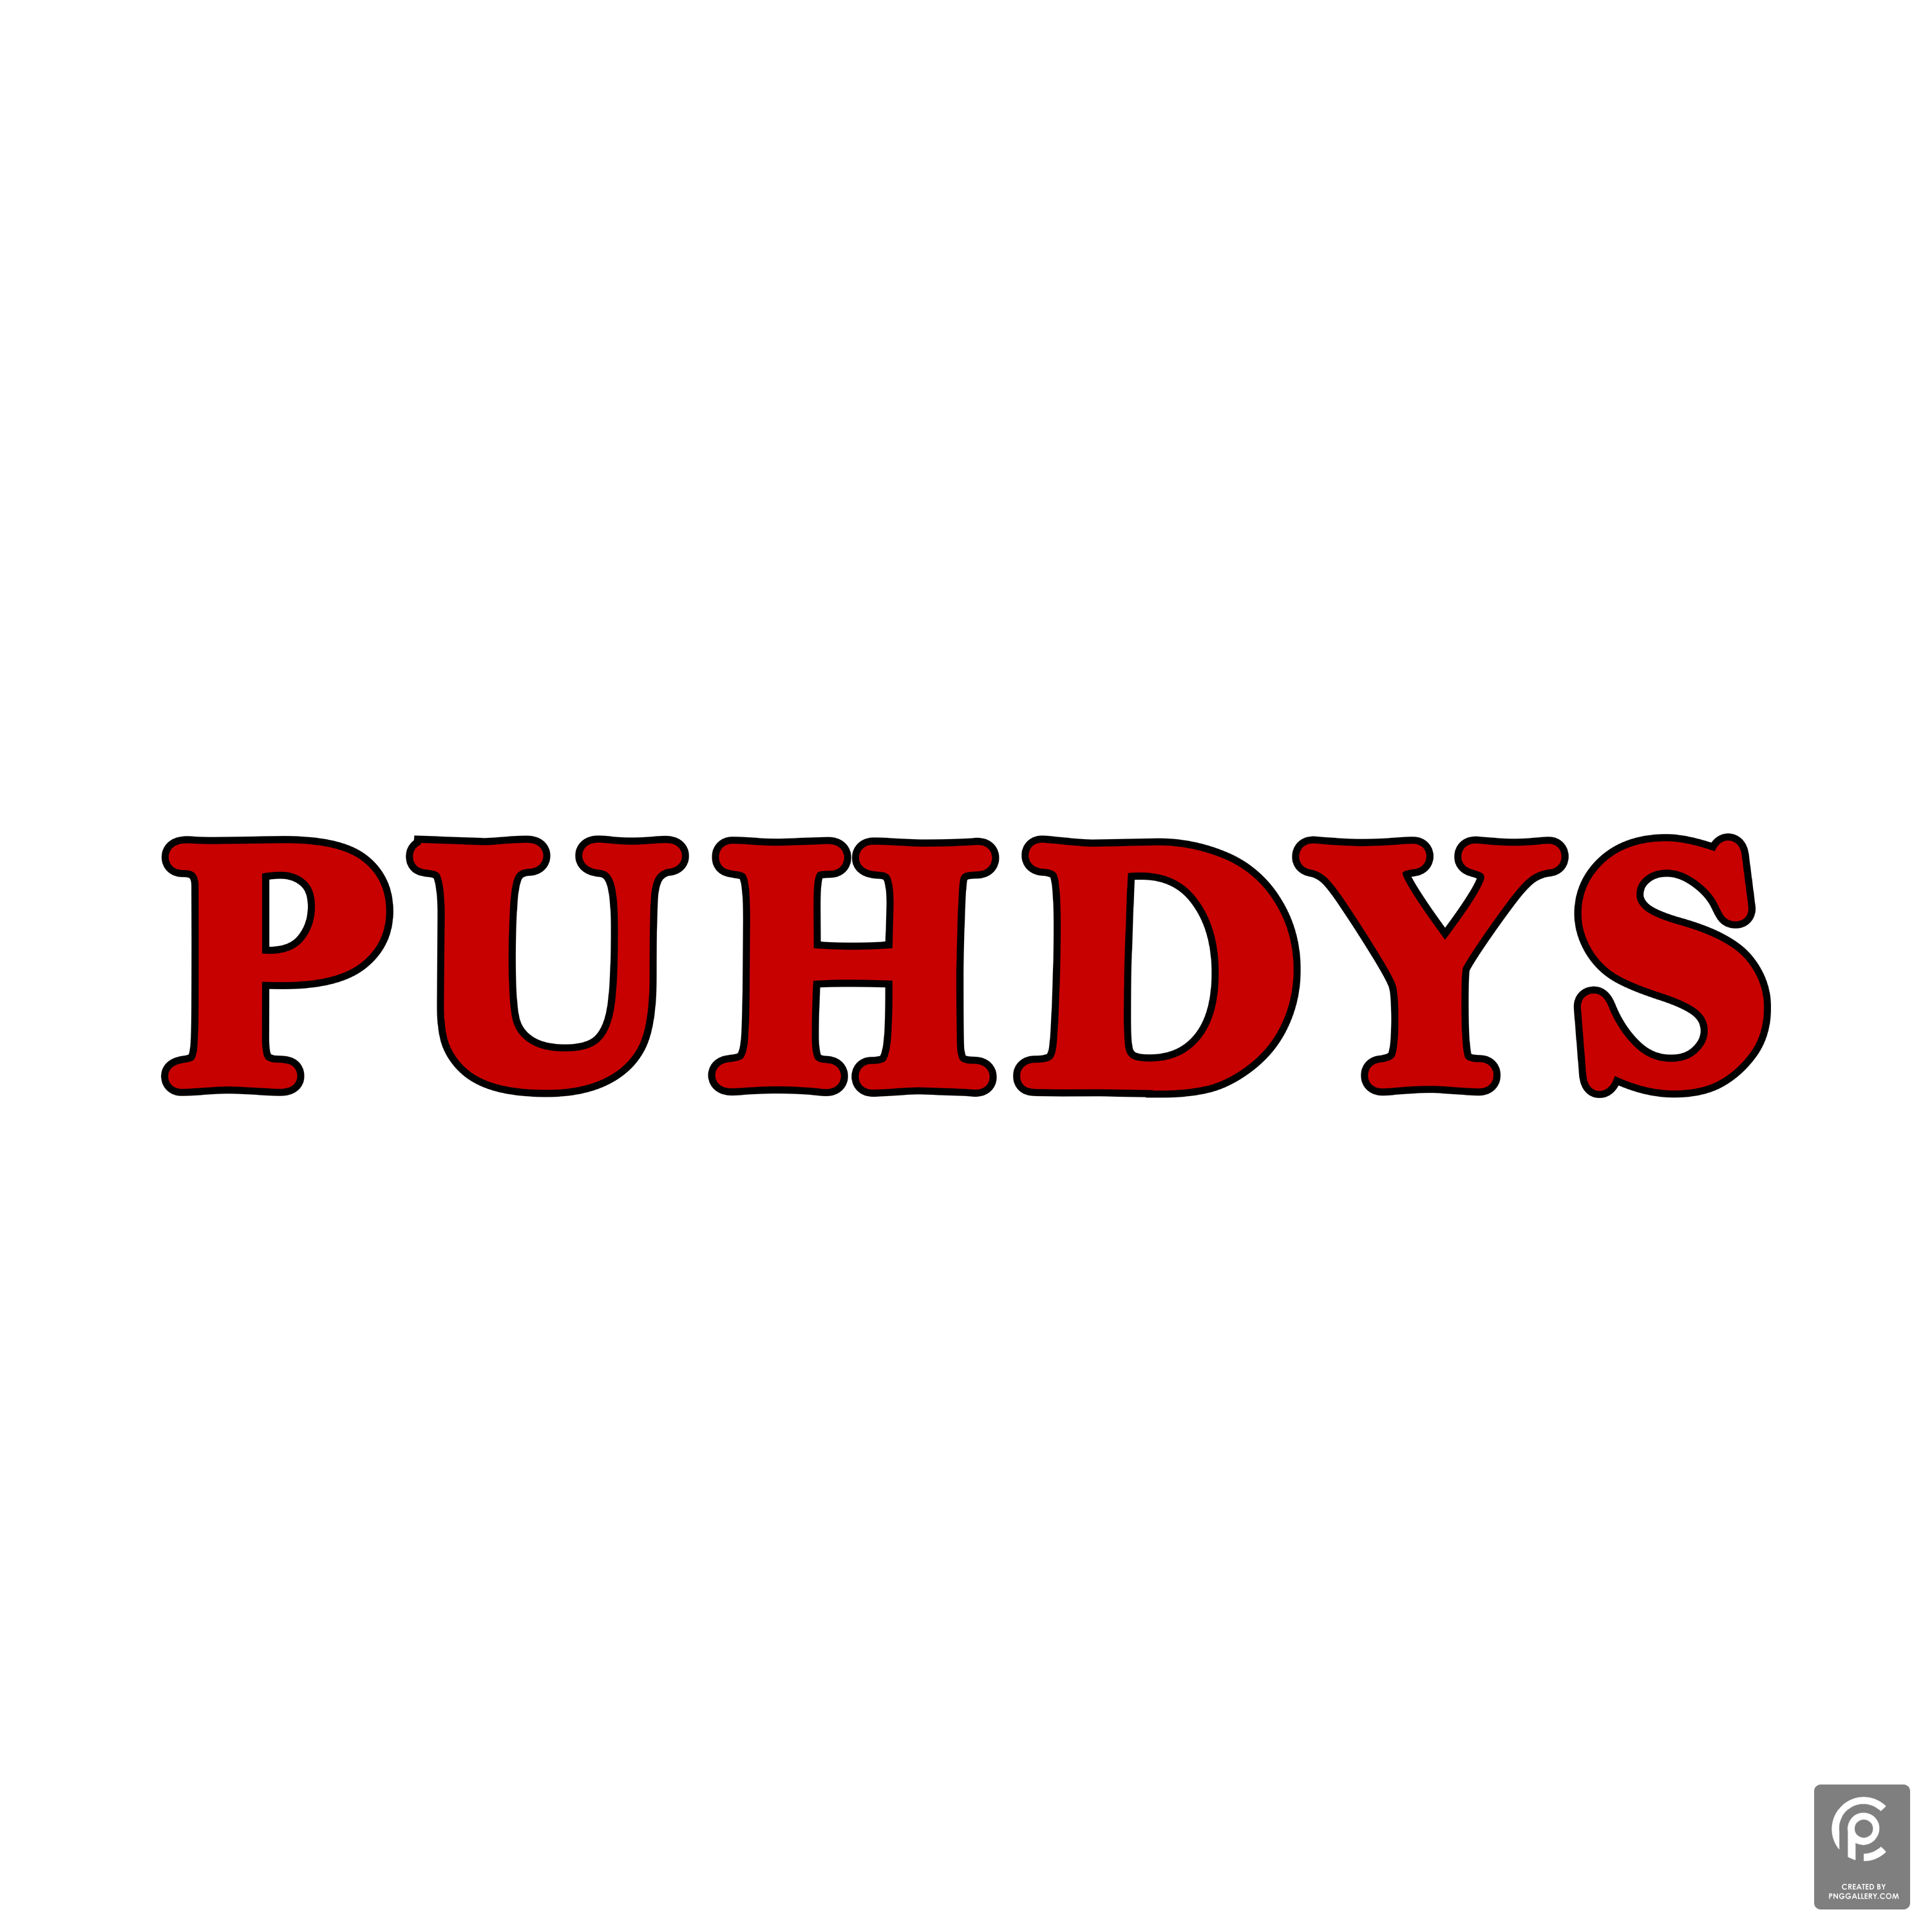 Puhdys Logo Transparent Clipart